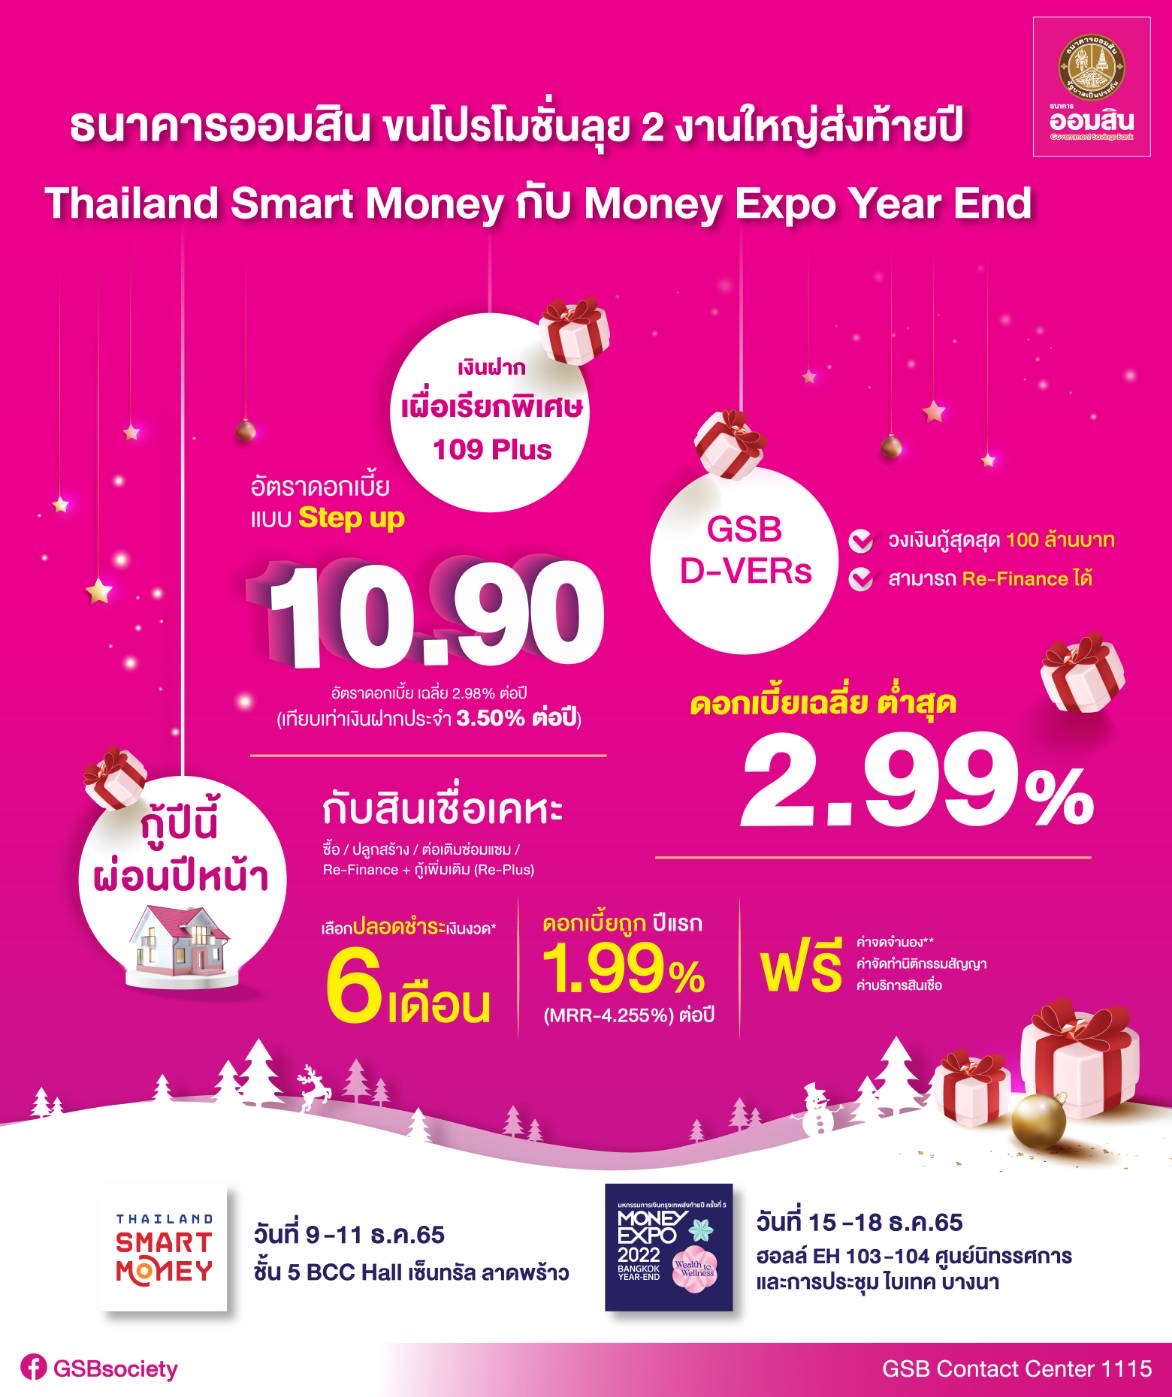 ออมสิน ขนโปรโมชั่นลุย 2 งานใหญ่ส่งท้ายปี Thailand Smart Money กับ Money Expo Year End ชูเงินฝากเผื่อเรียกพิเศษ 109 Plus ดอกเบี้ยขั้นบันได สูงสุด 10.90%ต่อปี